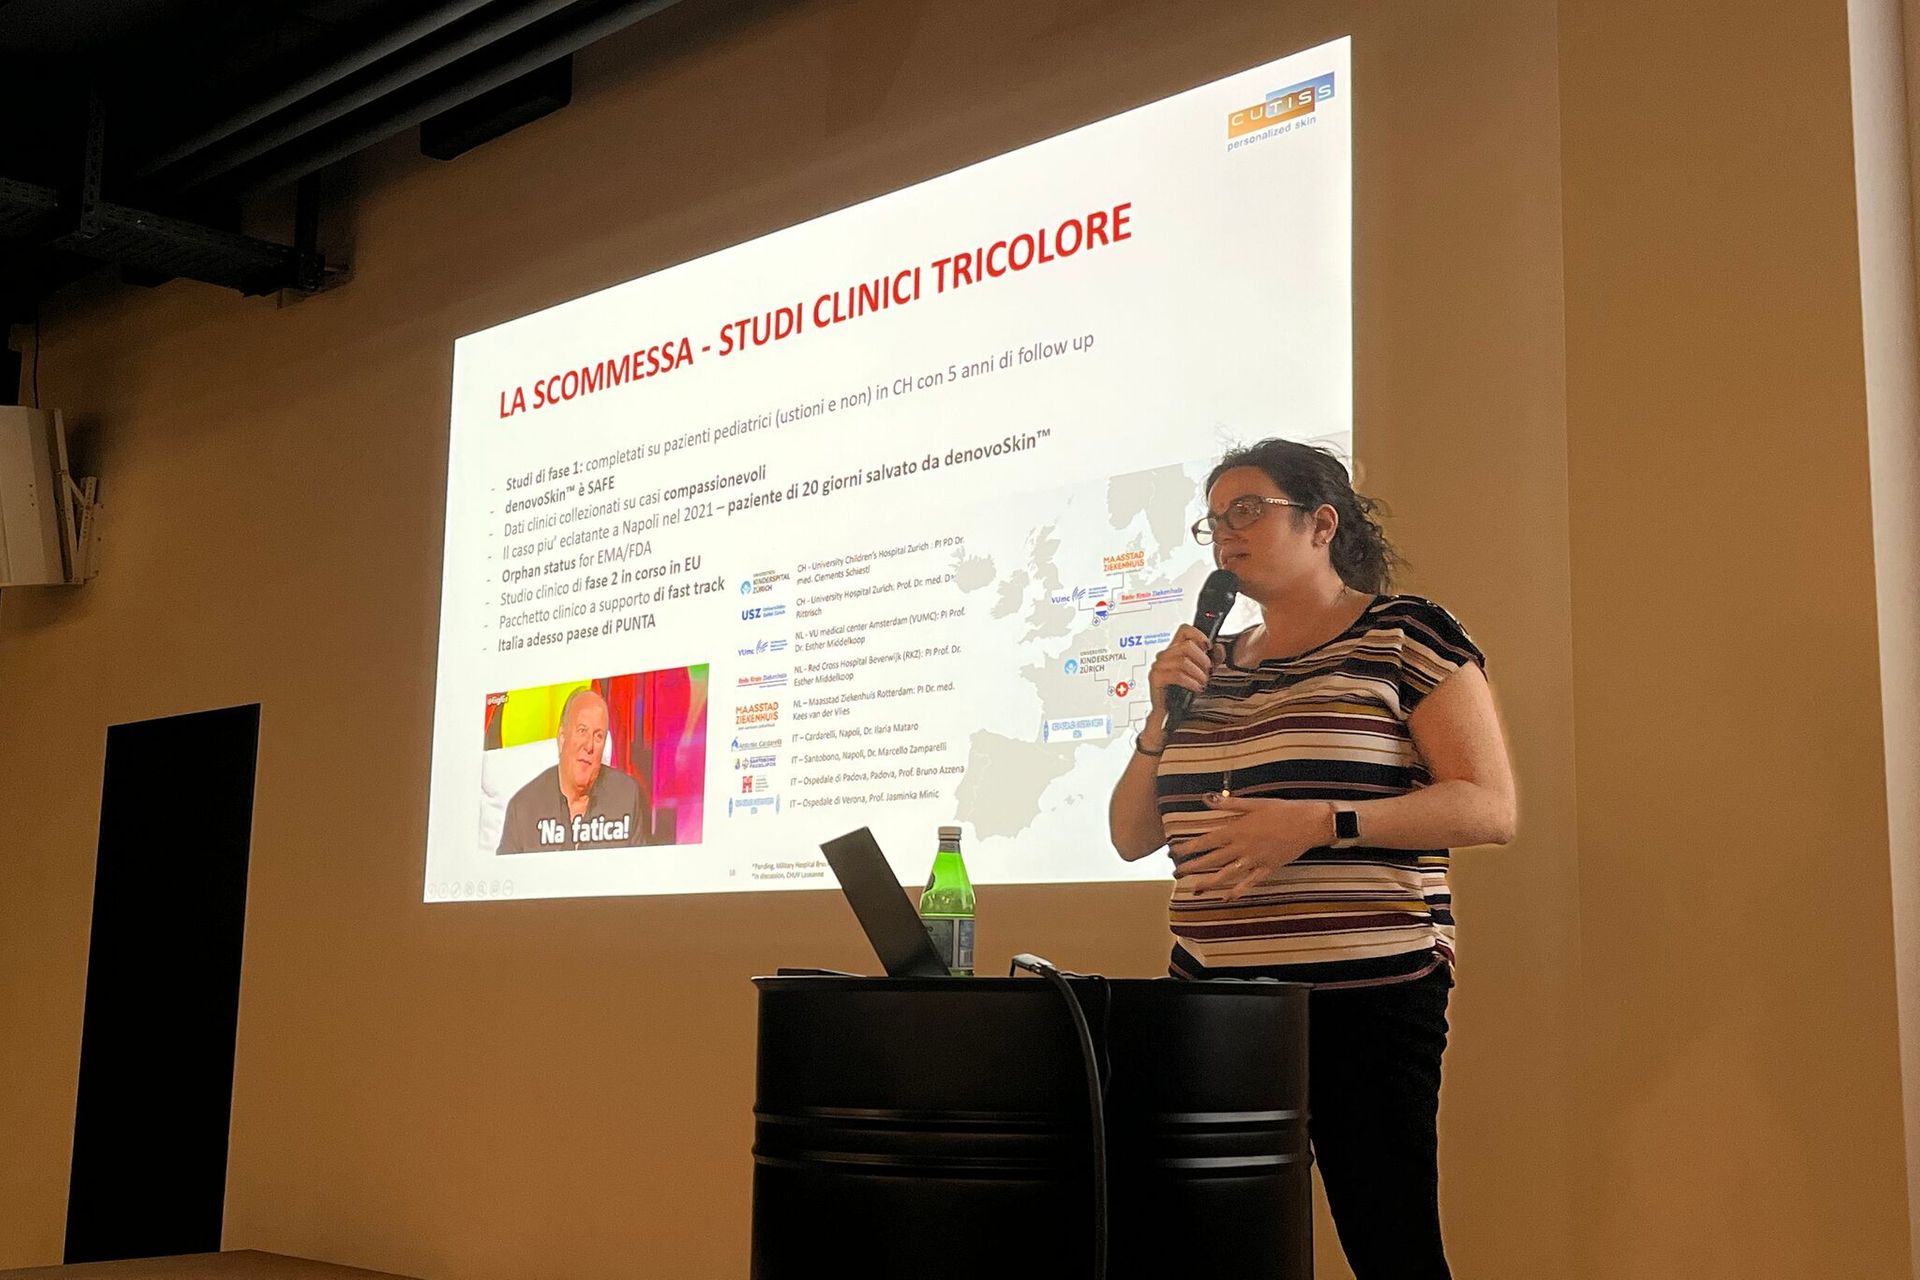 #pizzatech ასოციაციის მიერ ორგანიზებული "Italian Tech Night"-ის პირველი გამოცემა გაიმართა 24 წლის 2022 მარტის საღამოს IFJ-ის Startup Space-ში შლიერენში, ციურიხის მახლობლად: დანიელა მარინოს გამოსვლა, მეწარმე ჯანმრთელობისა და სფეროებში. Cutiss AG-ის დამფუძნებელი